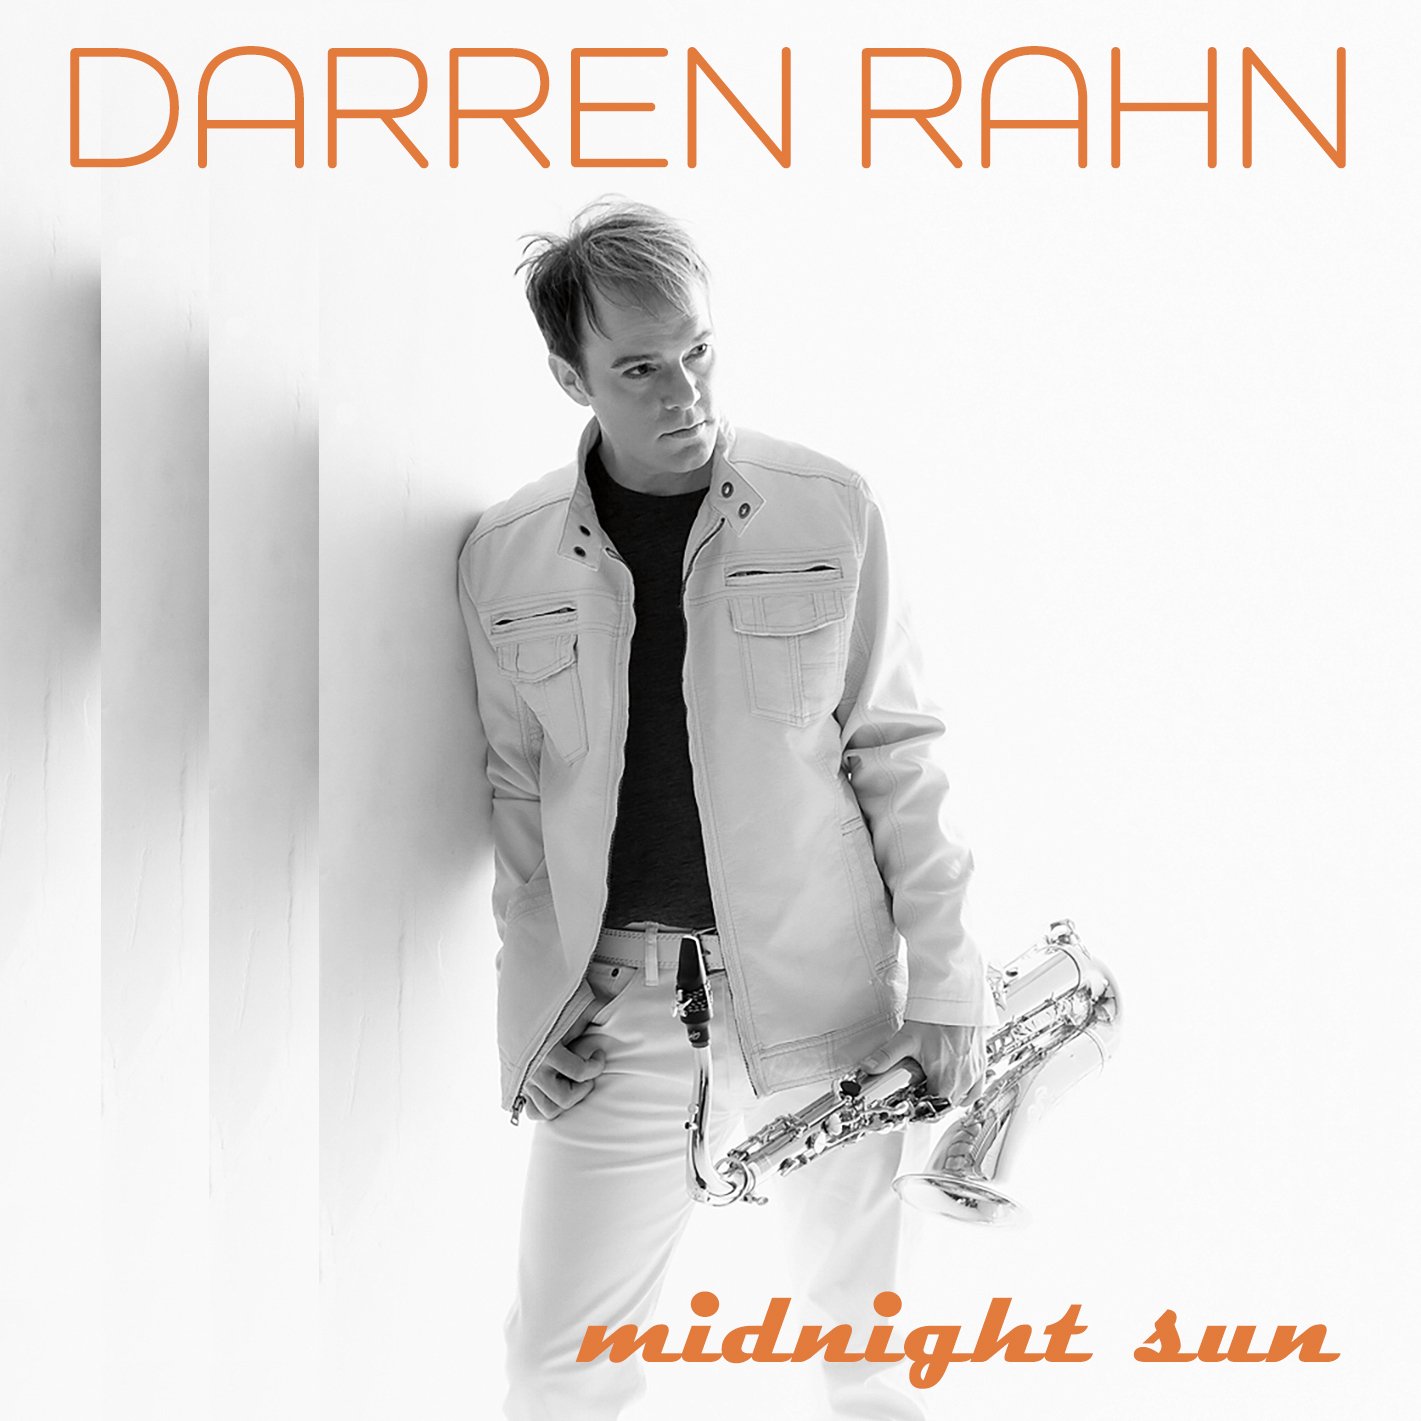 Darren Rahn "Midnight Sun" Single